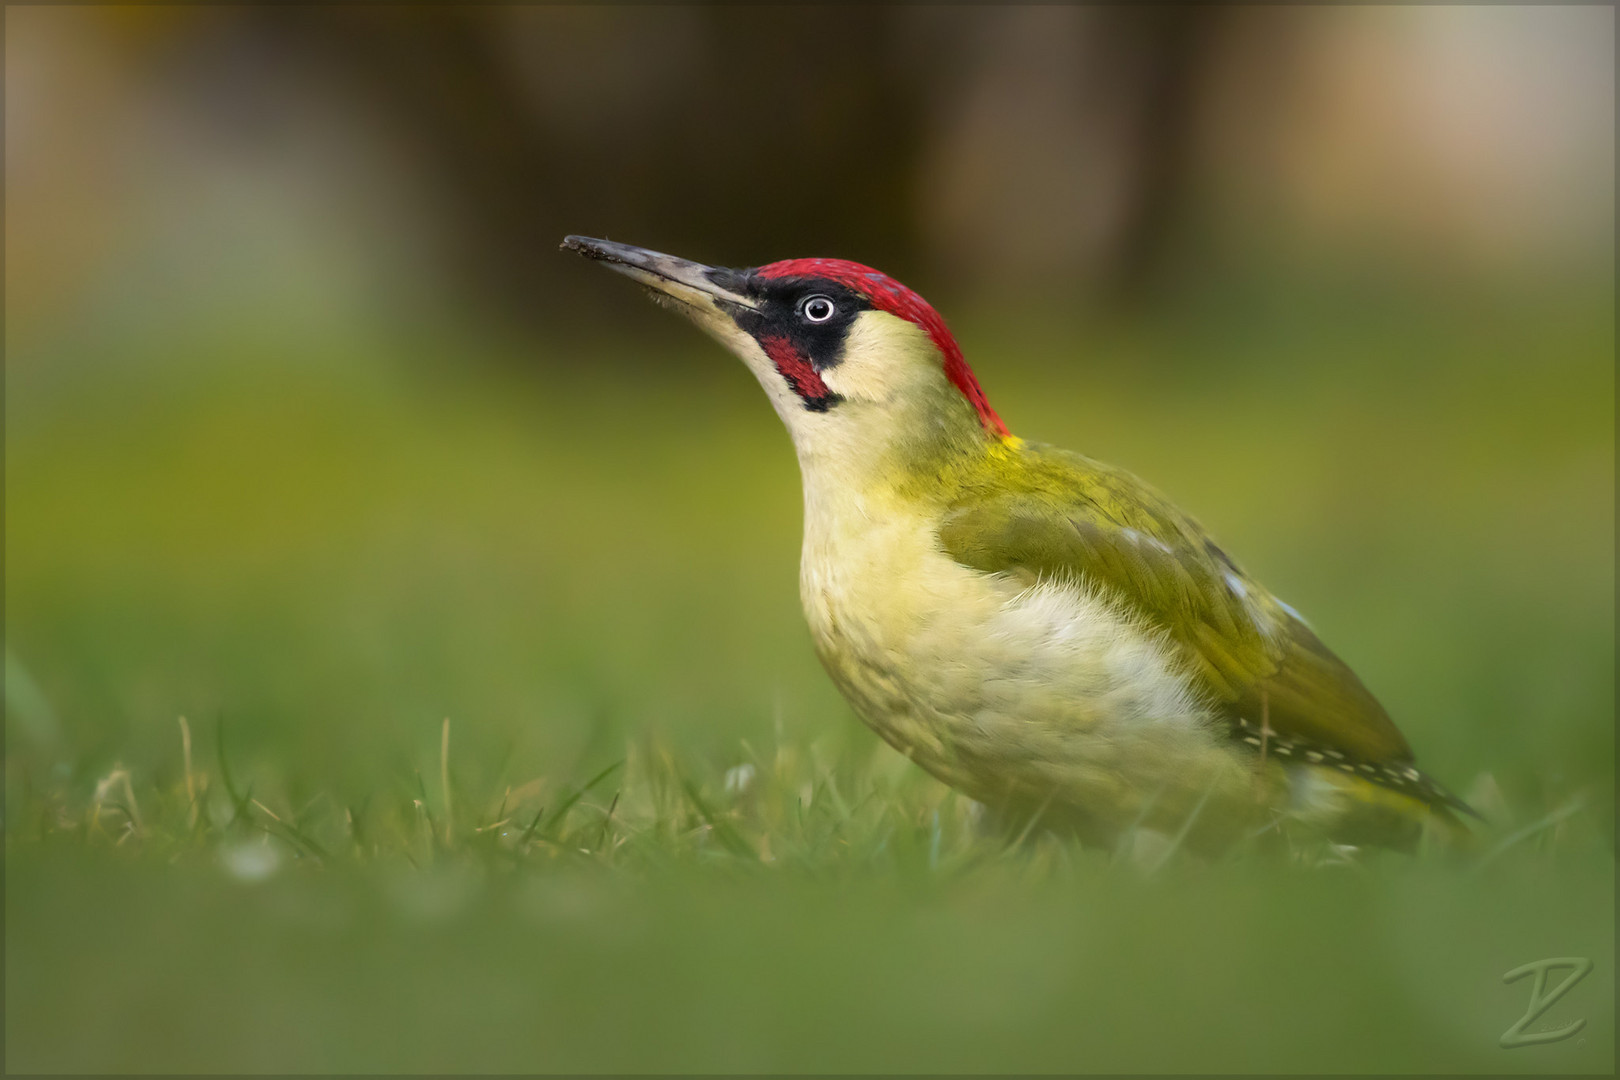 Grünspecht (European green woodpecker)